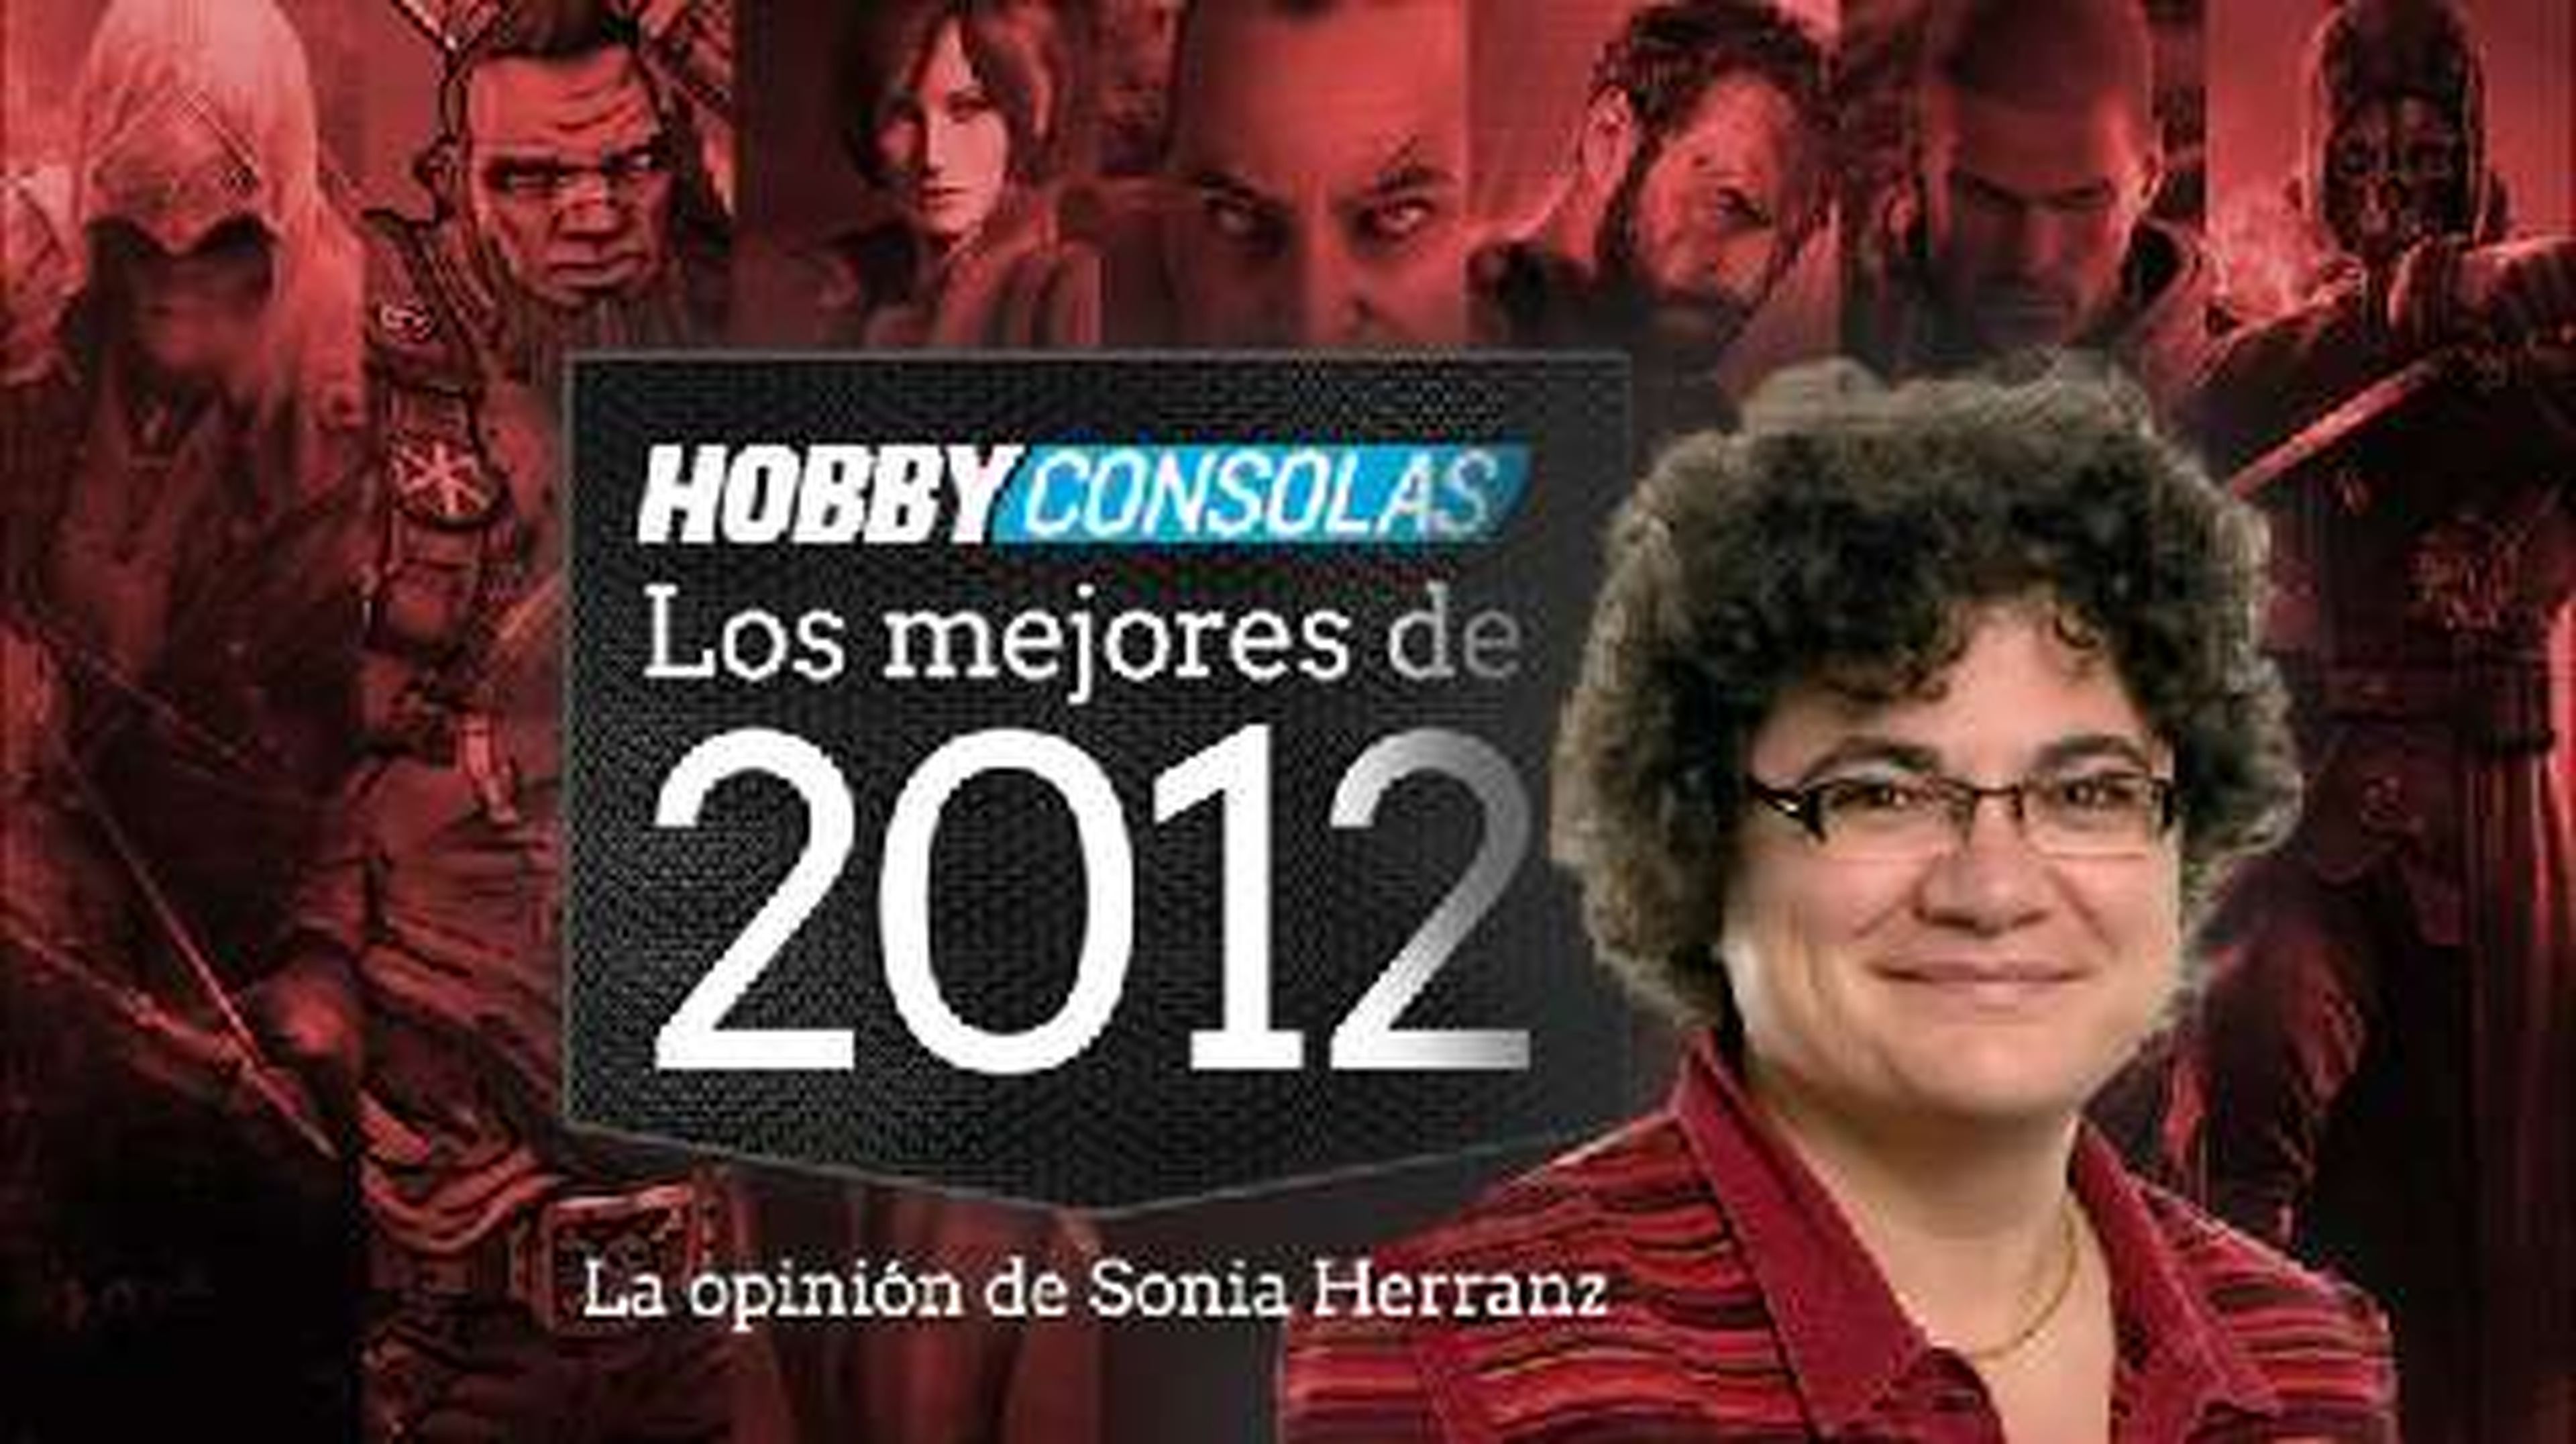 Lo mejor de 2012 (HD) Sonia Herranz en HobbyConsolas.com